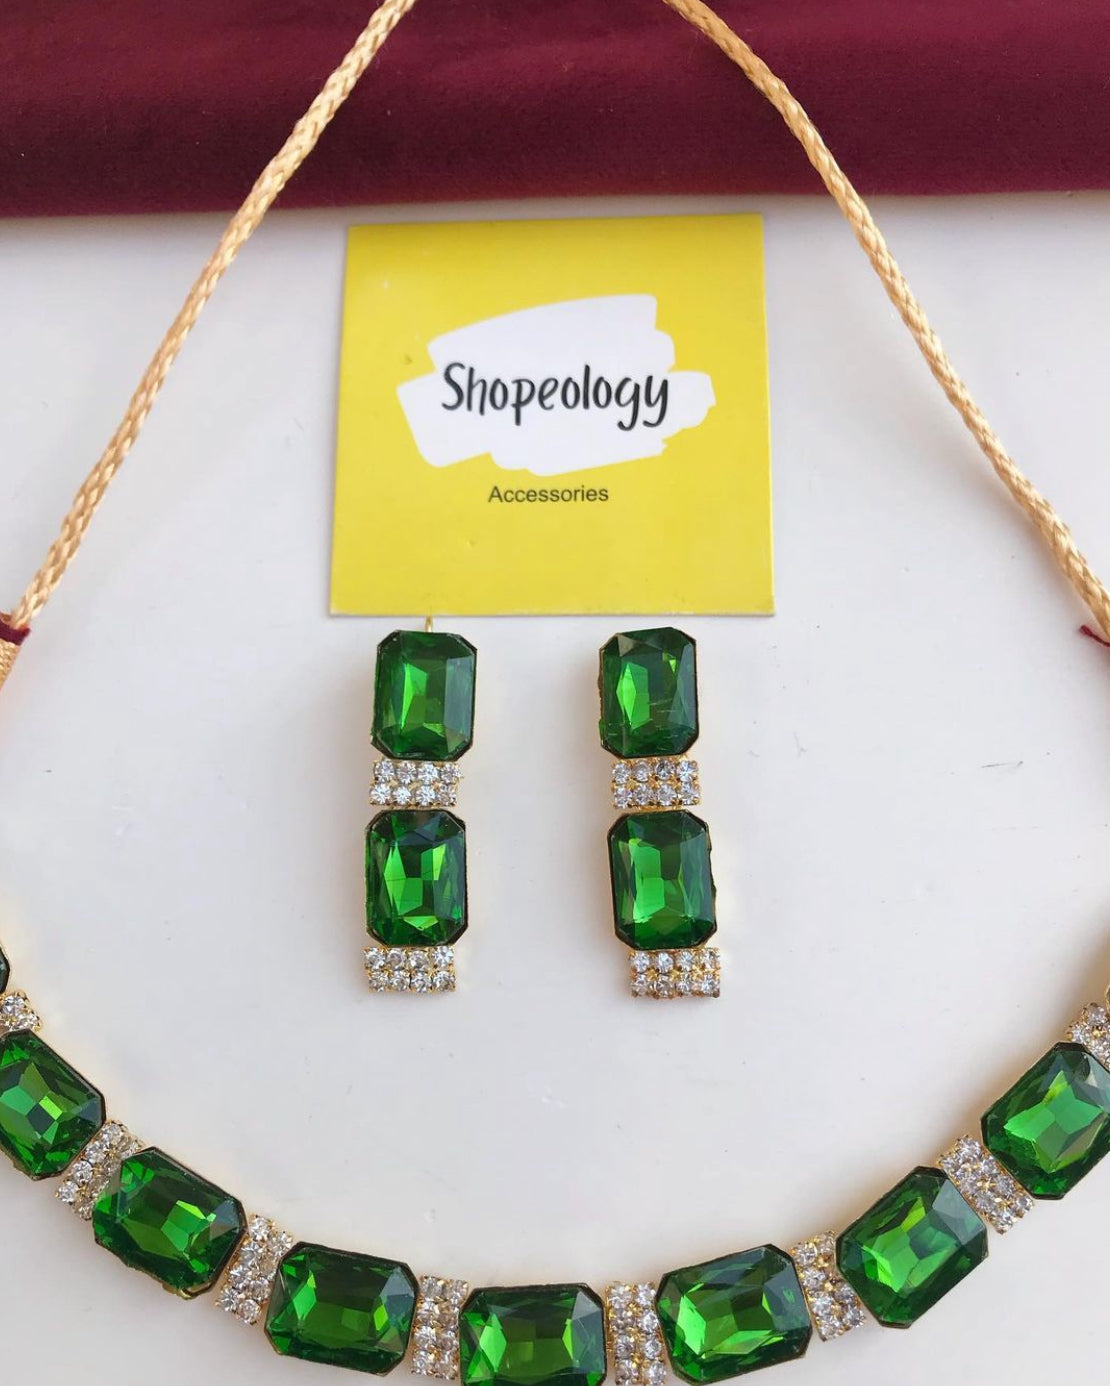 Ruby necklace set - Shopeology